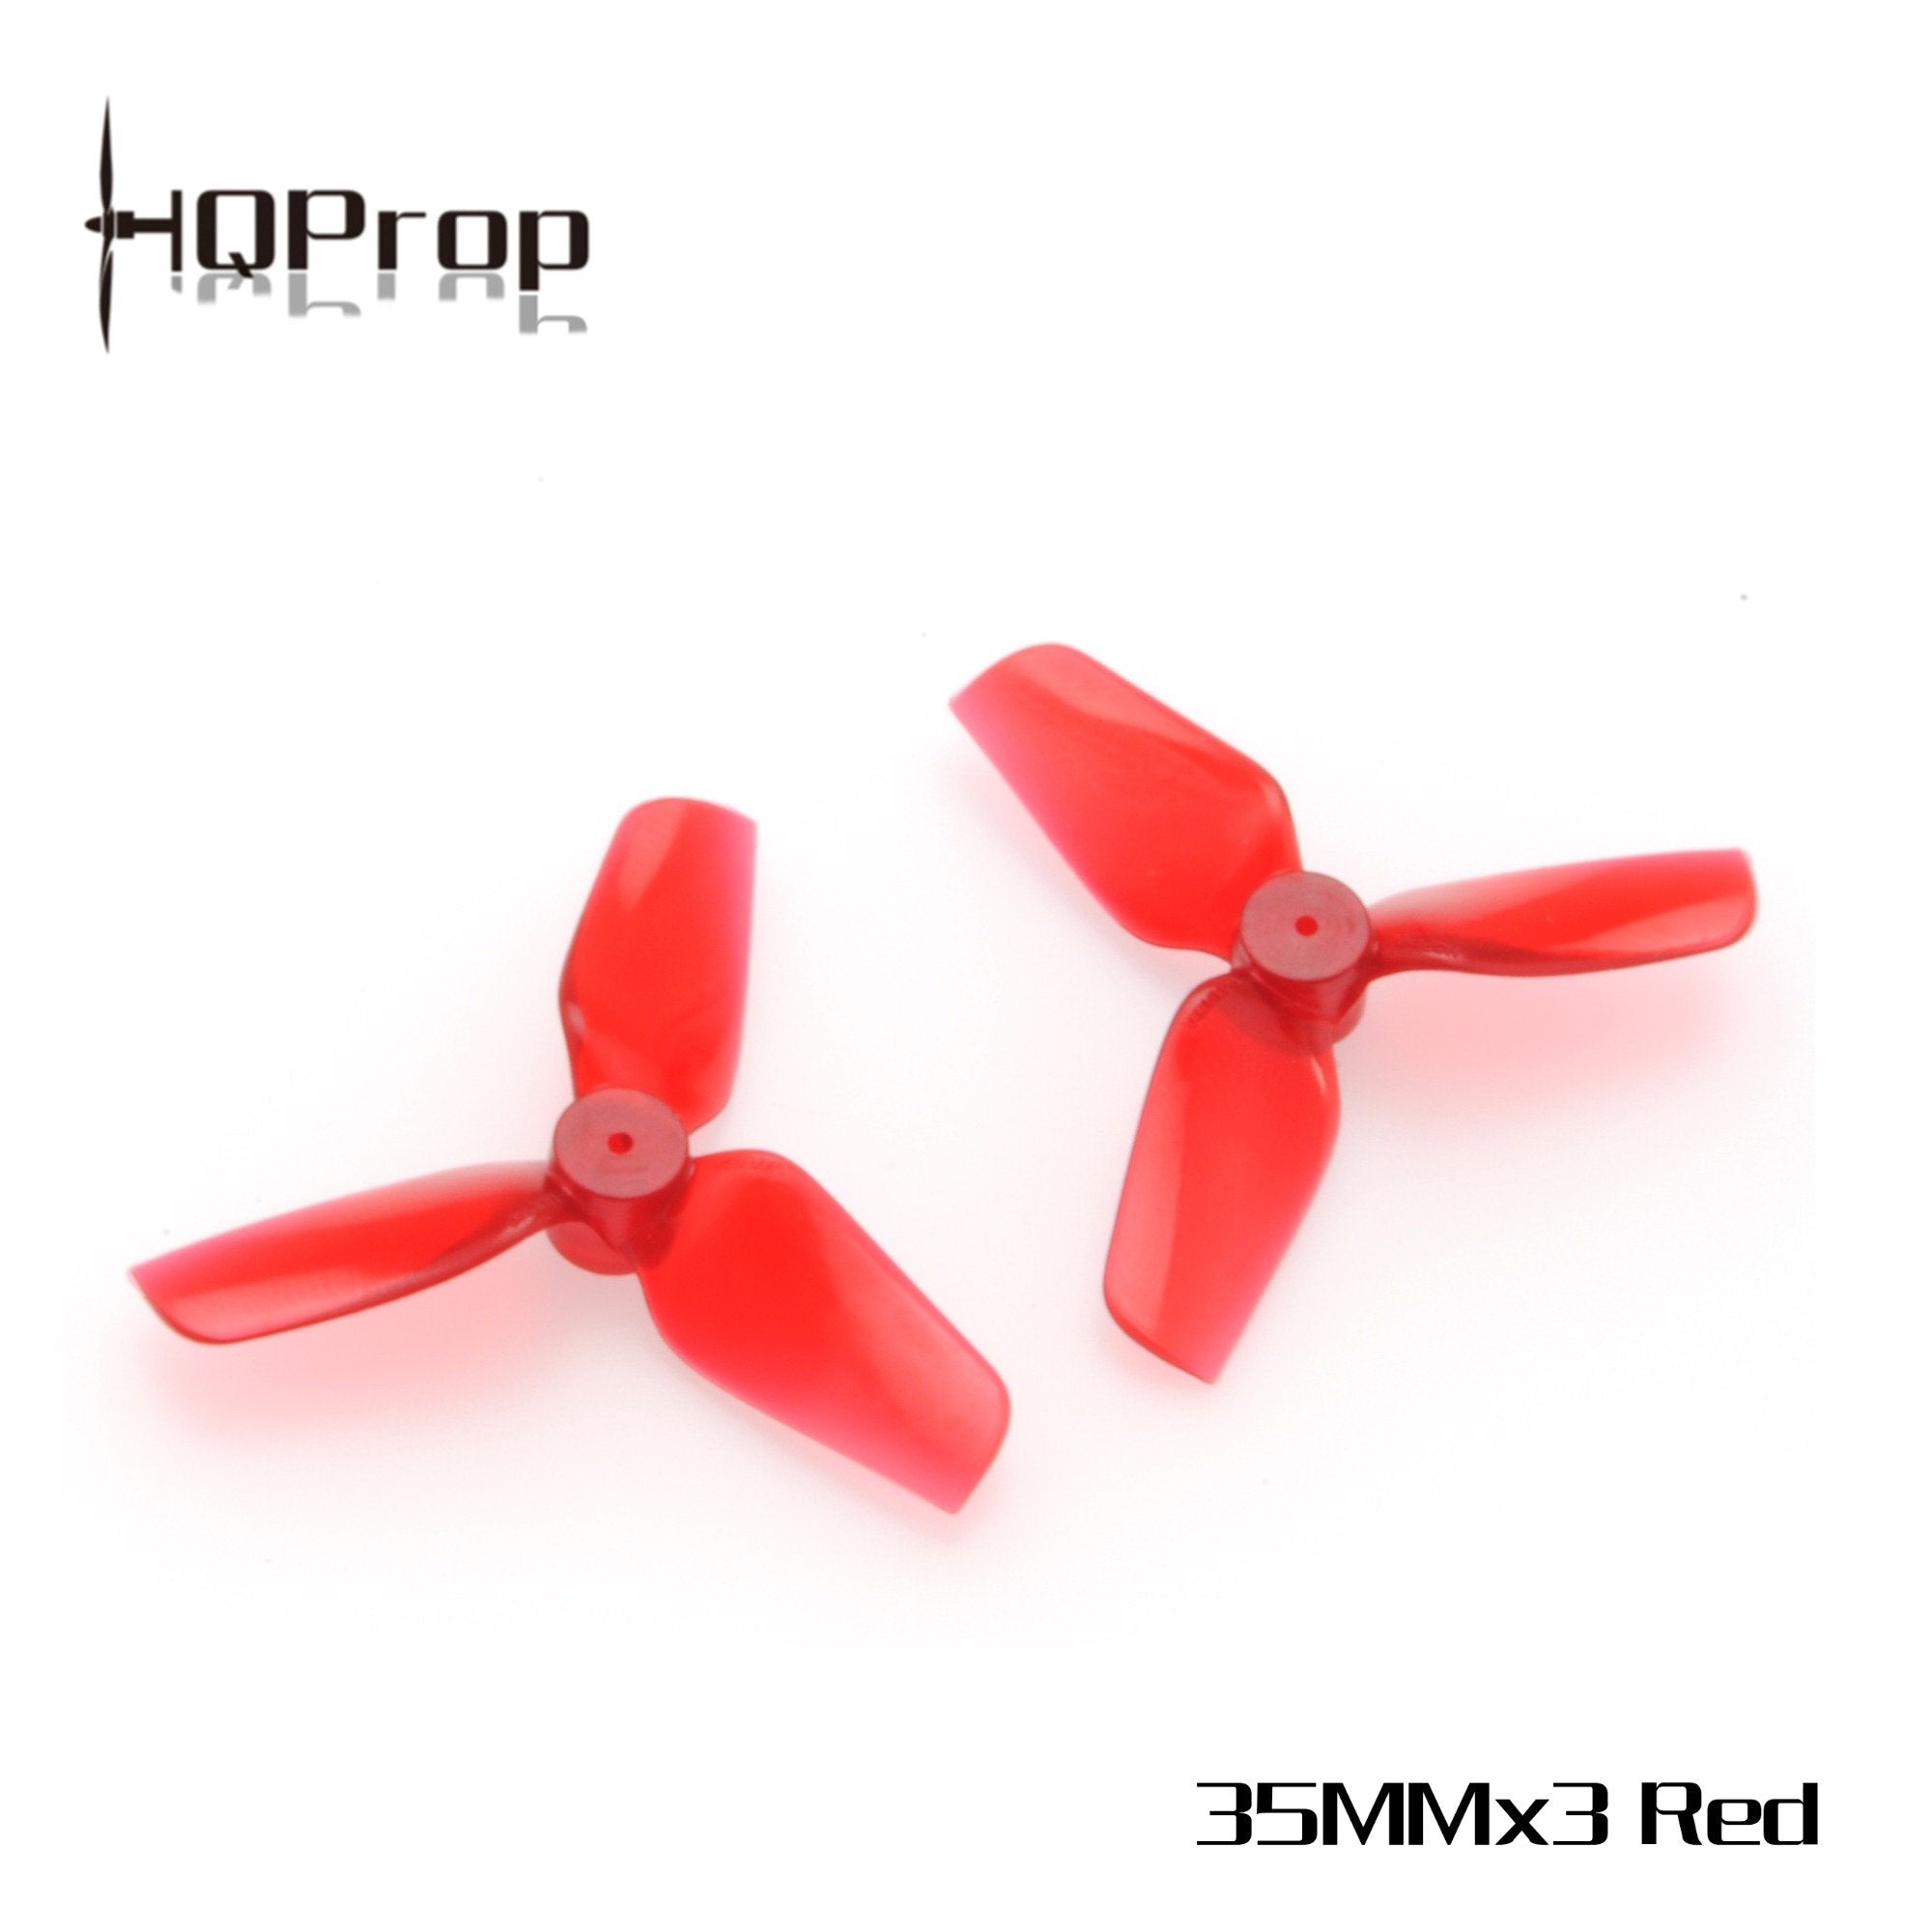 HQProp Micro Whoop Prop 35MMX3 Propellers 5 - HQProp - Drone Authority